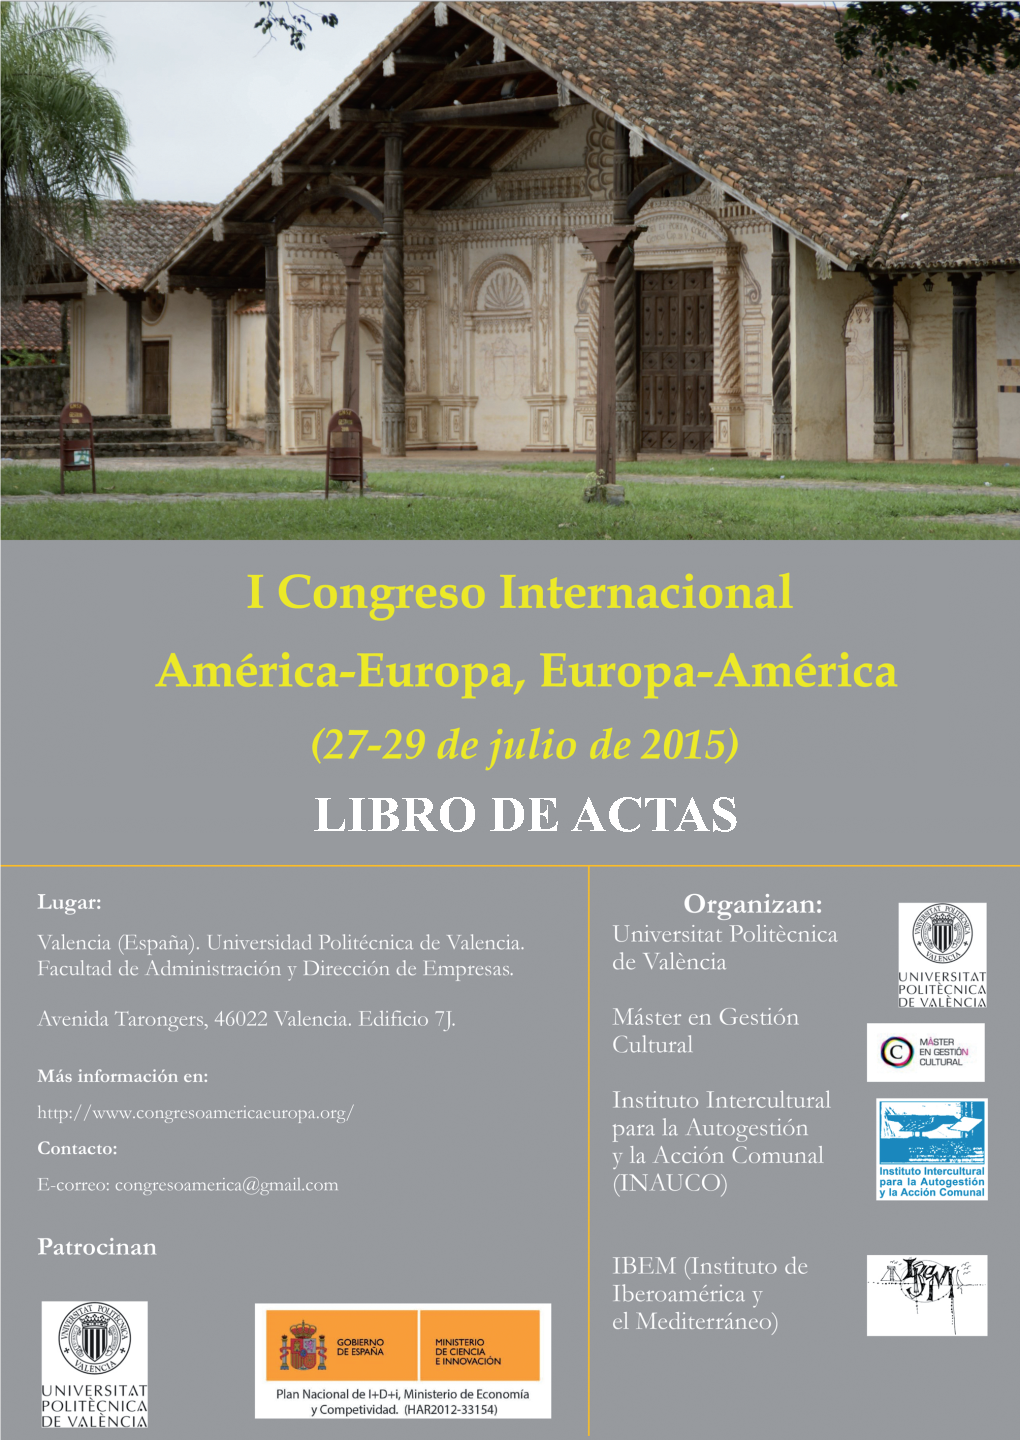 I Congreso Internacional América-Europa, Europa-America